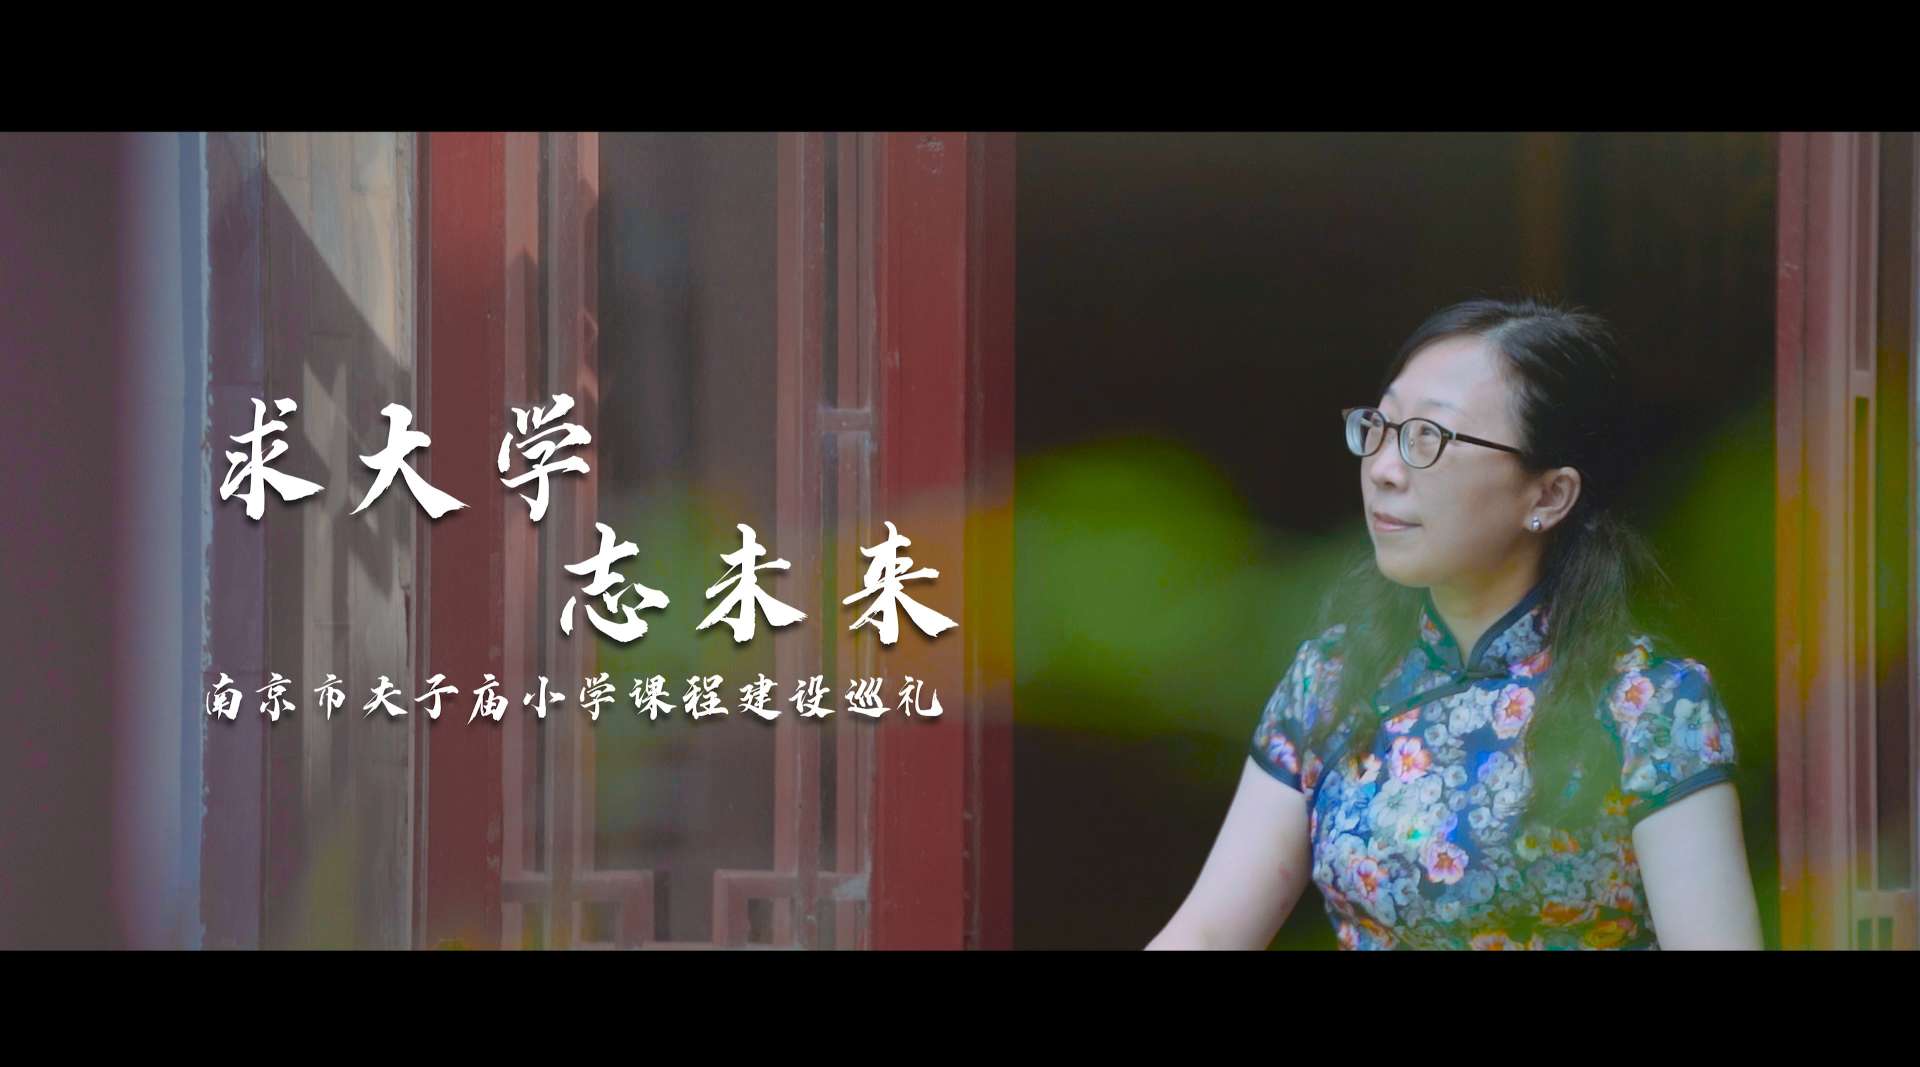 【千秋孔子 百年夫小】 南京市夫子庙小学2020宣传片